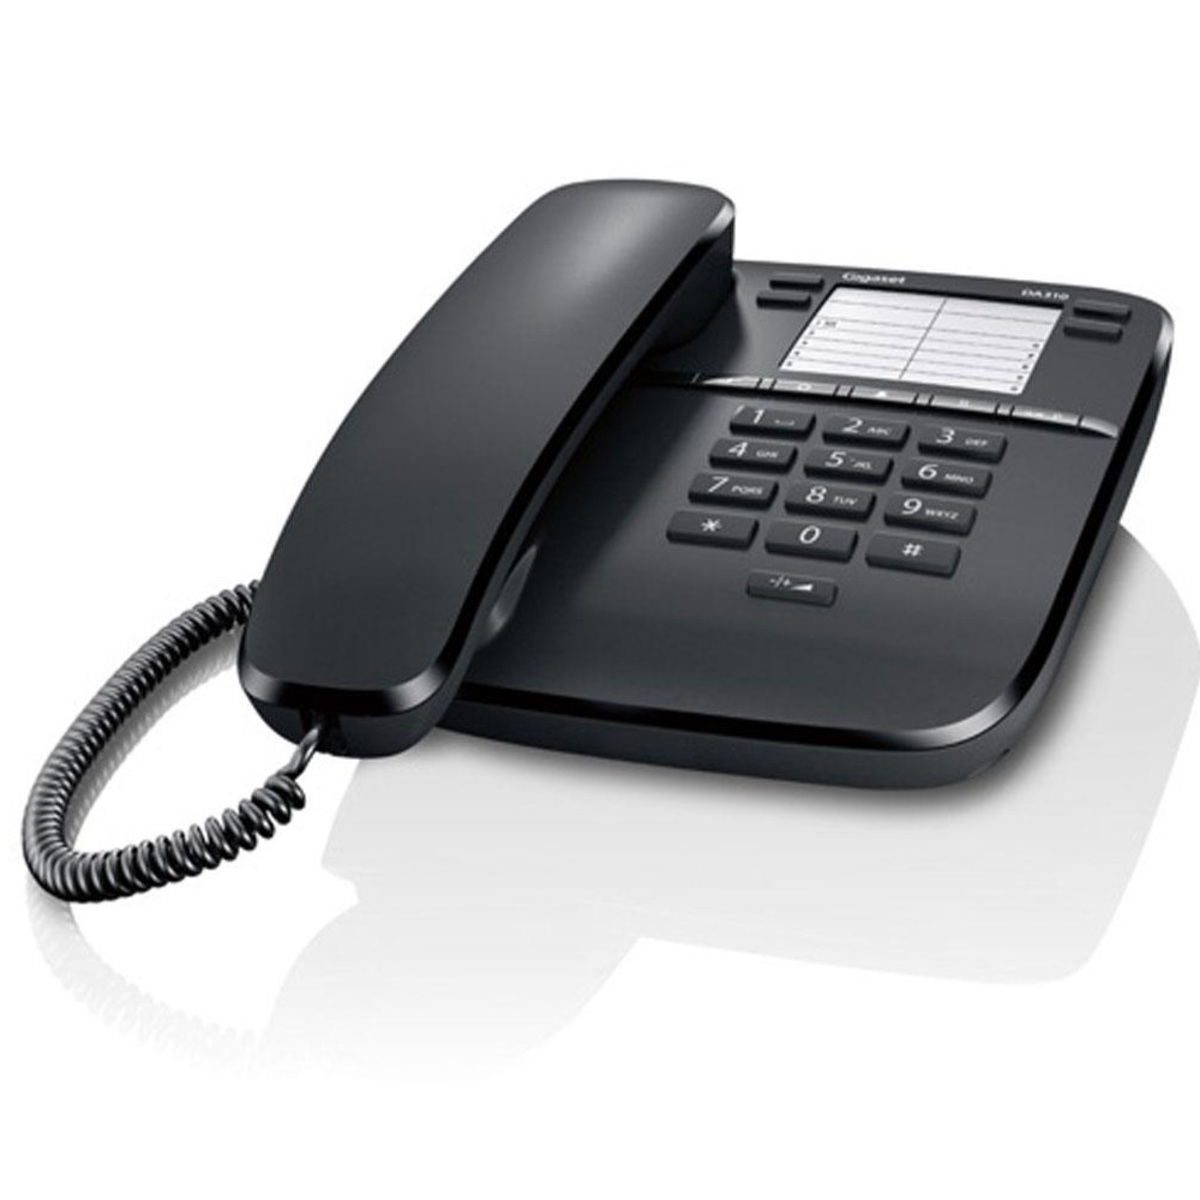 قم بشراء siemens gigaset phone da310 من الموقع من لولو هايبر ماركت cordless telephone